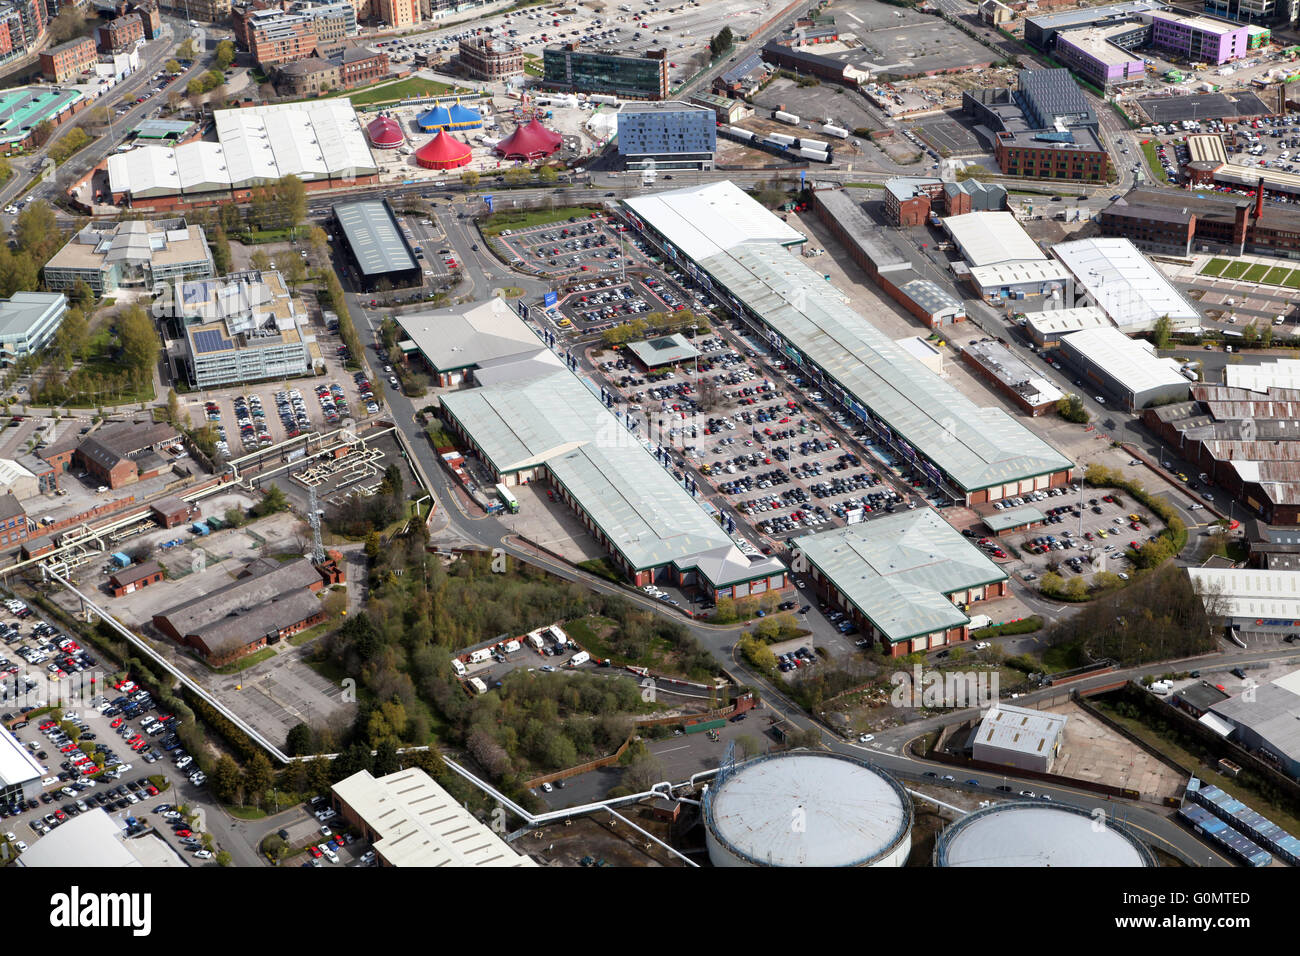 Vista aerea del Crown Point Shopping Center di Leeds, West Yorkshire, Regno Unito Foto Stock